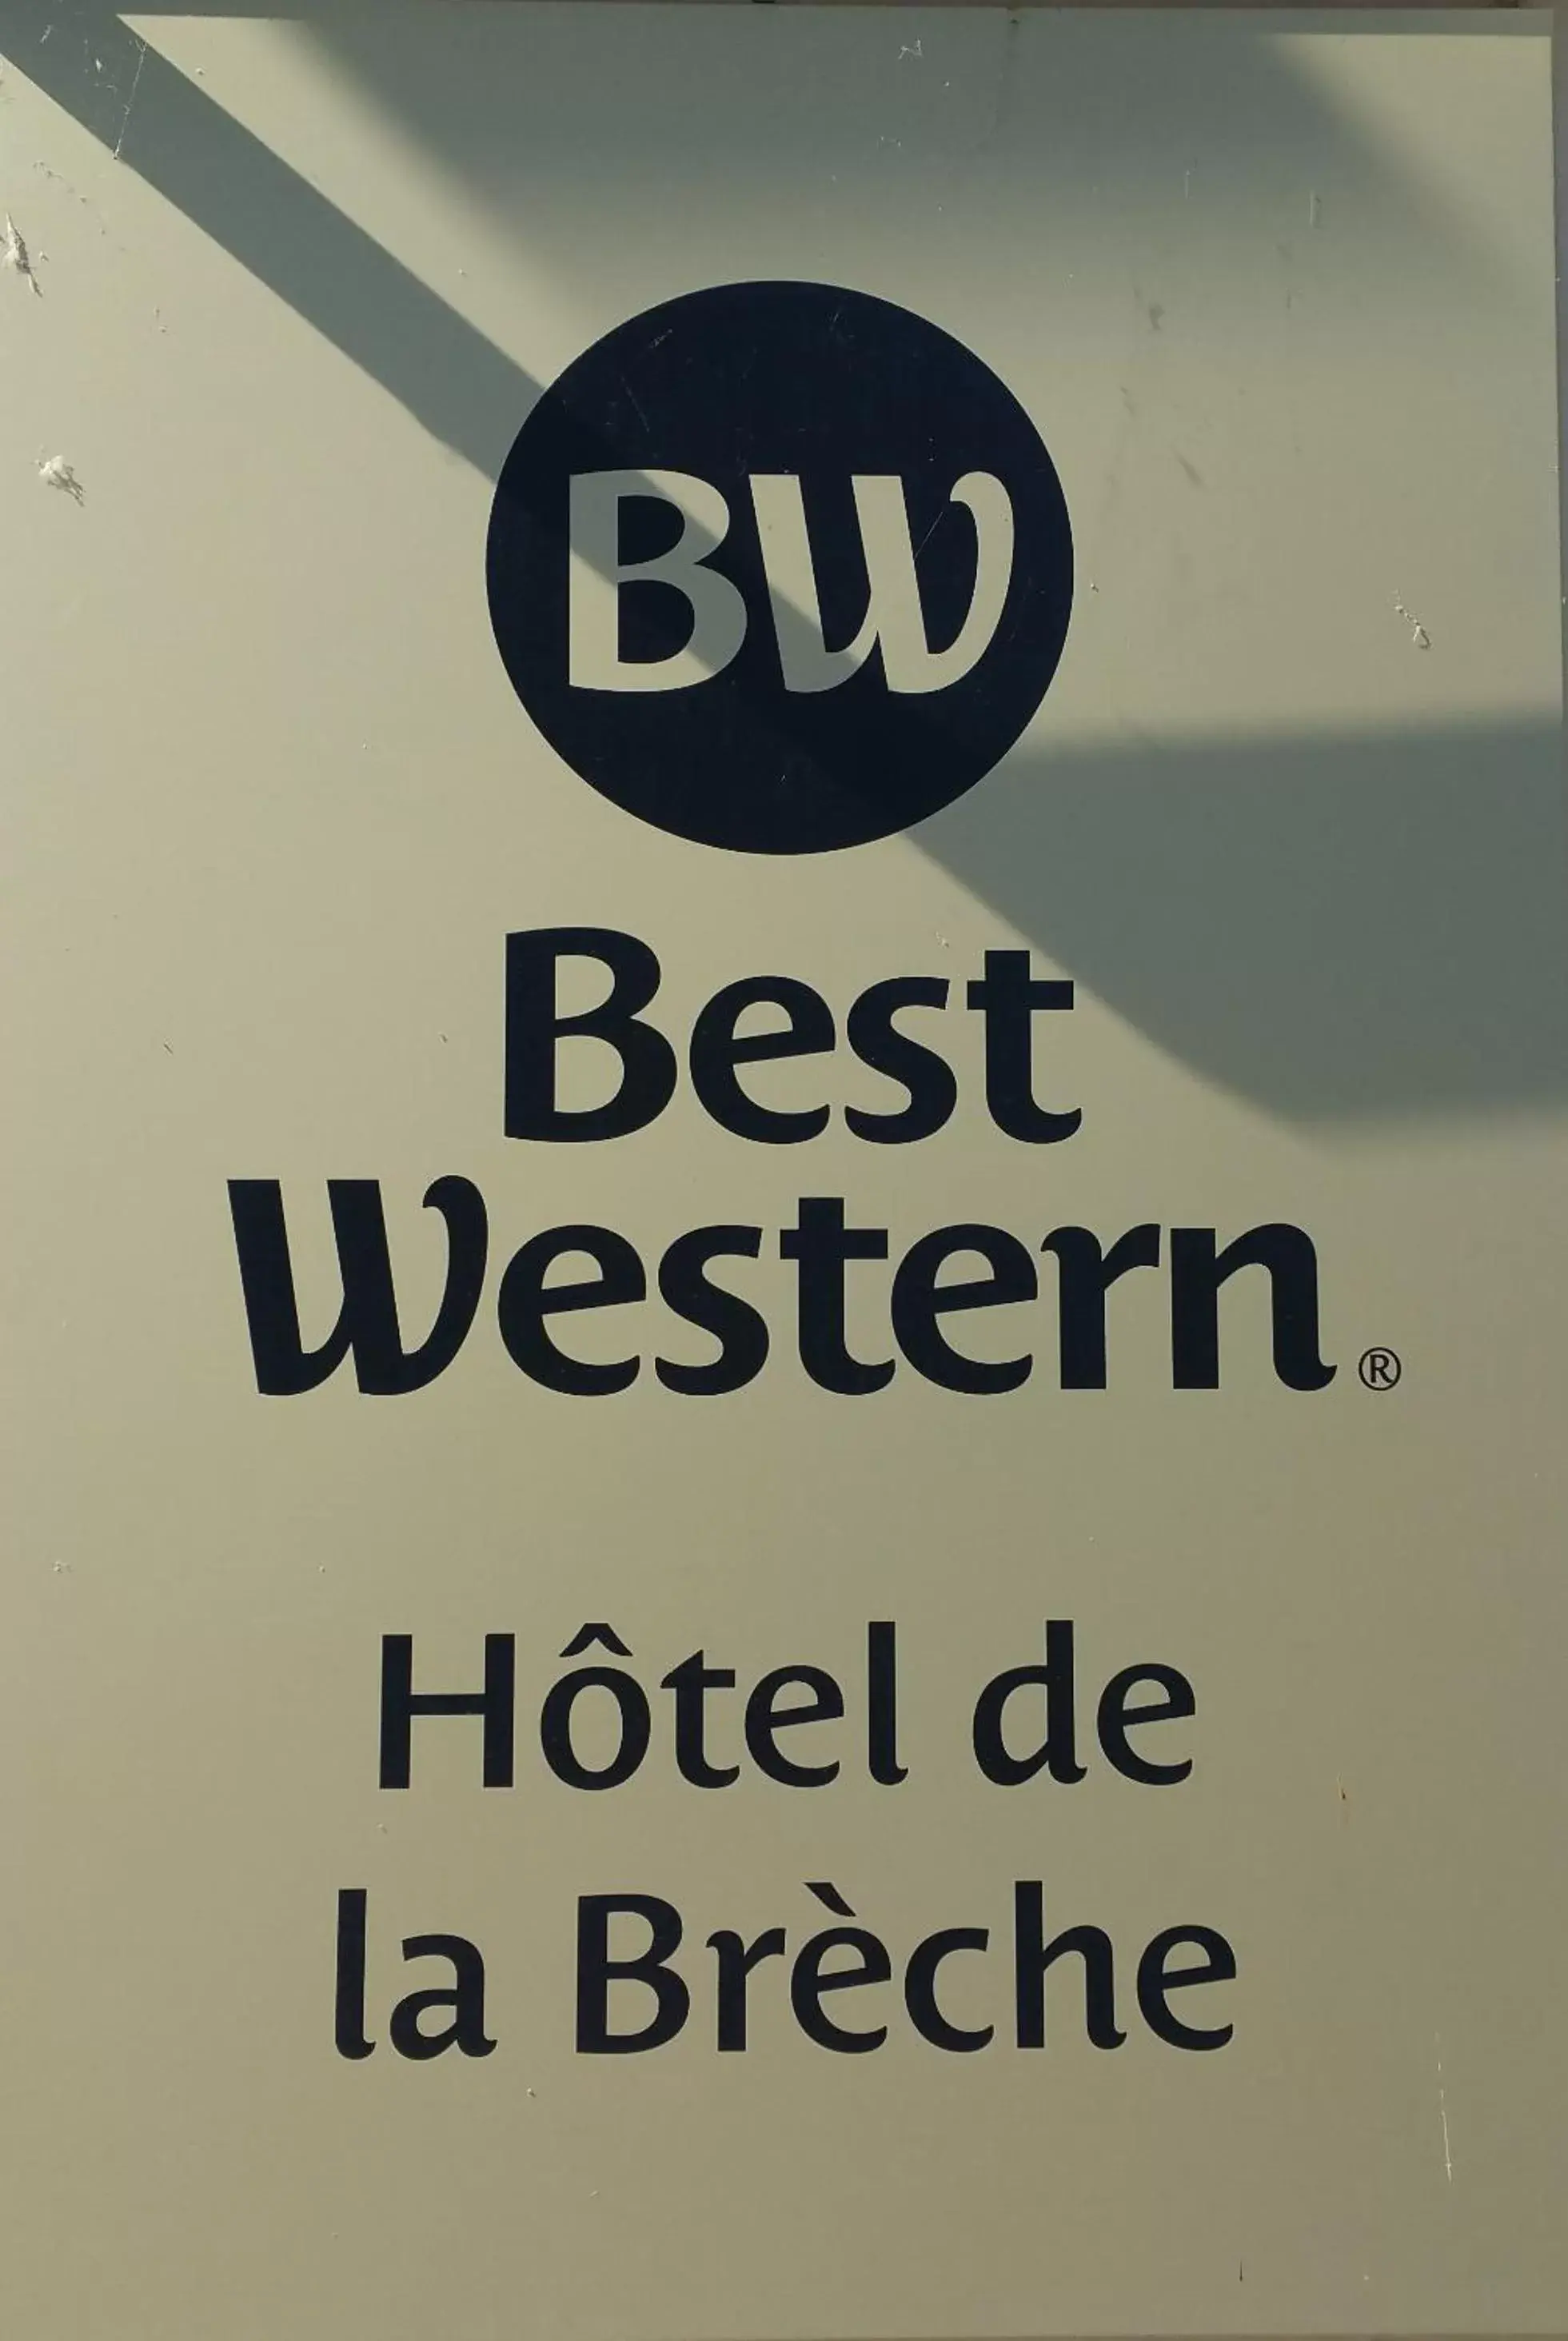 Property logo or sign in Best Western Hotel de la Breche